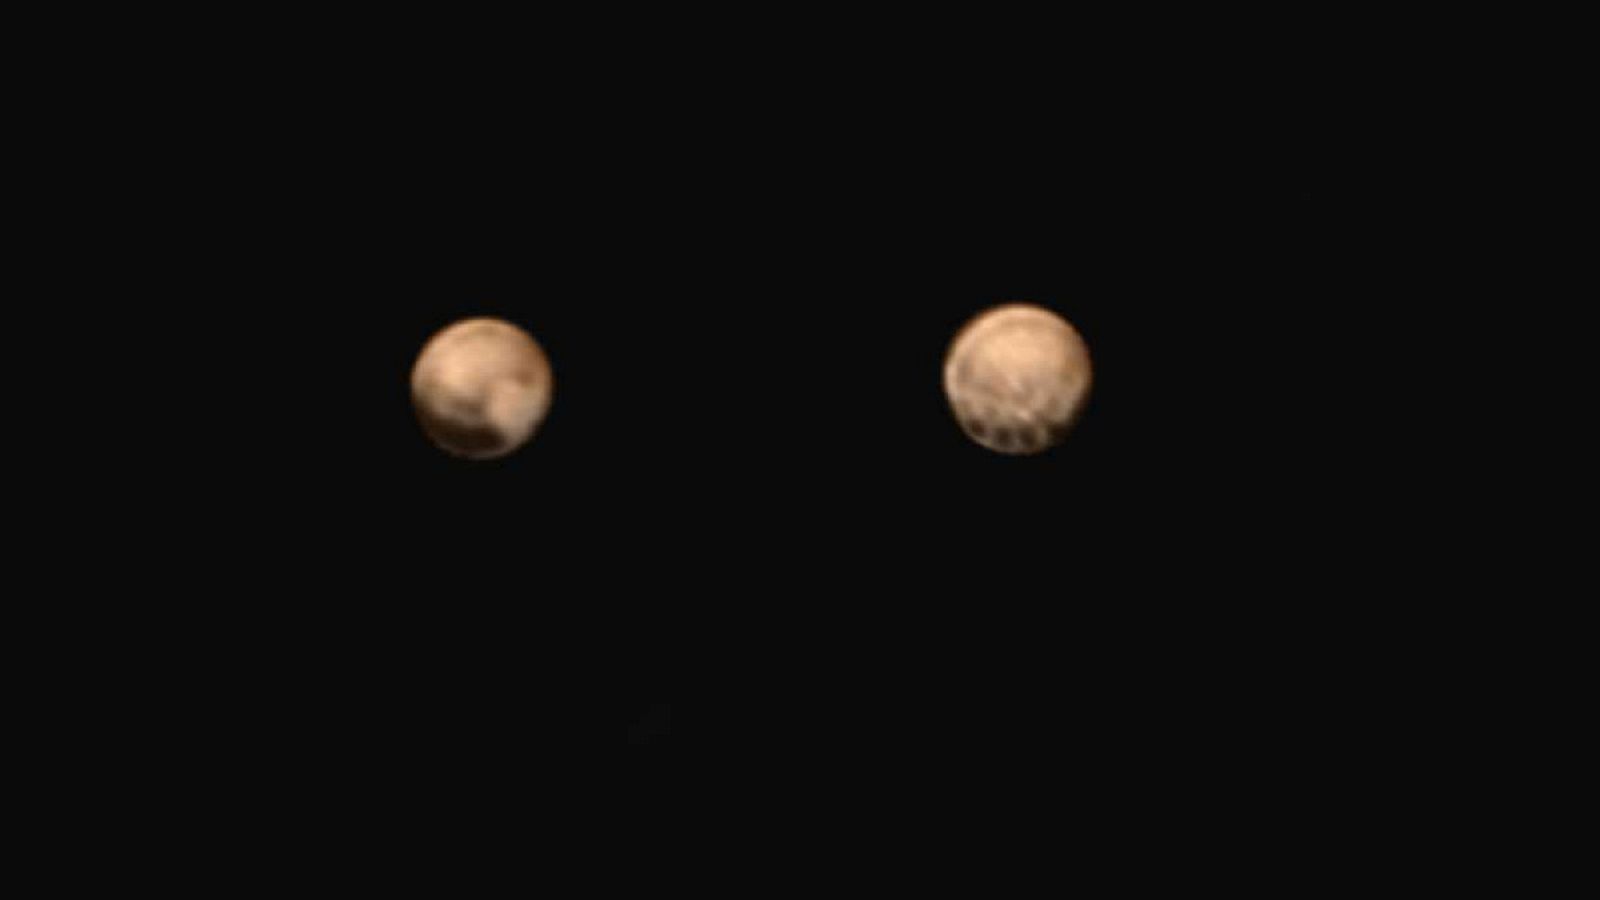 Imagen en color de dos caras de Plutón obtenidas por la nave New Horizons.